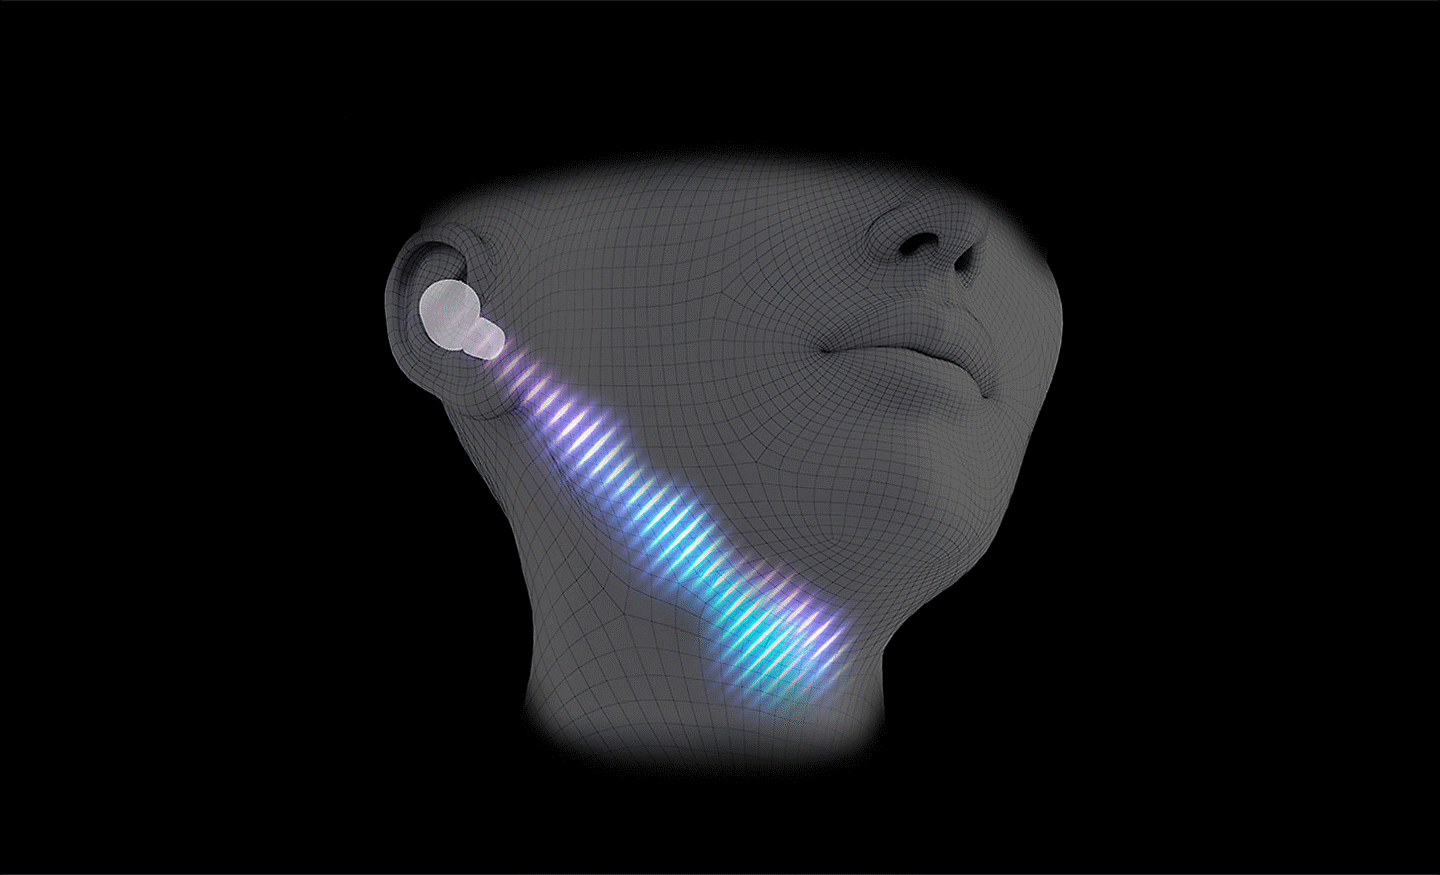 Εικόνα ενός κεφαλιού με ακουστικά που έχει δημιουργηθεί σε υπολογιστή, με μια διαγώνια γραμμή ηχητικού κύματος που κατευθύνεται από το αυτί προς τον λαιμό